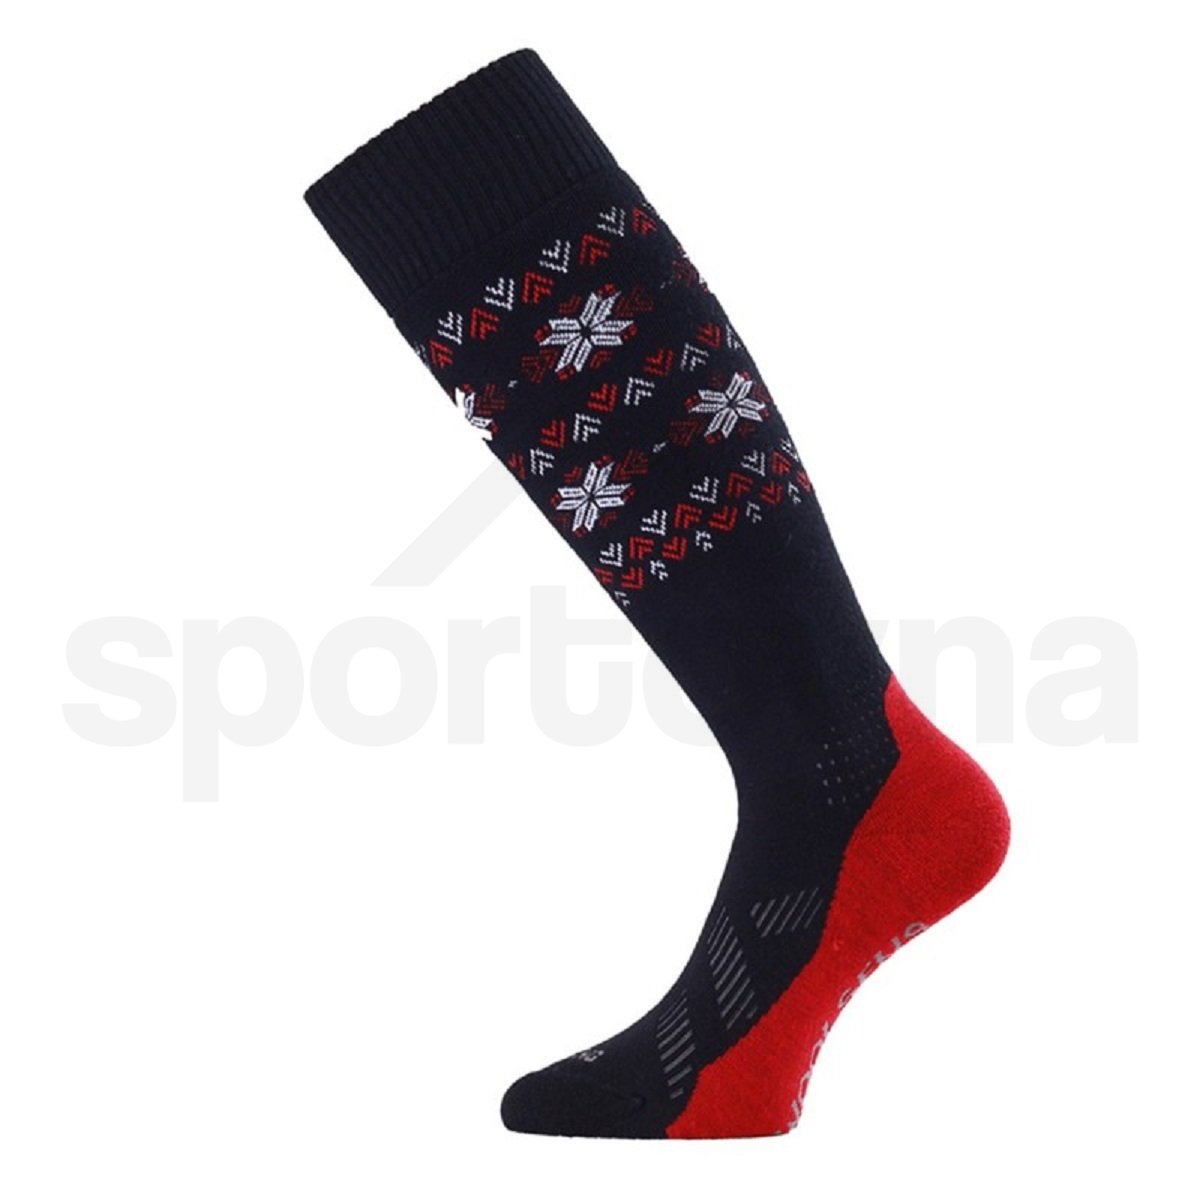 Ponožky Lasting FWI W - černá